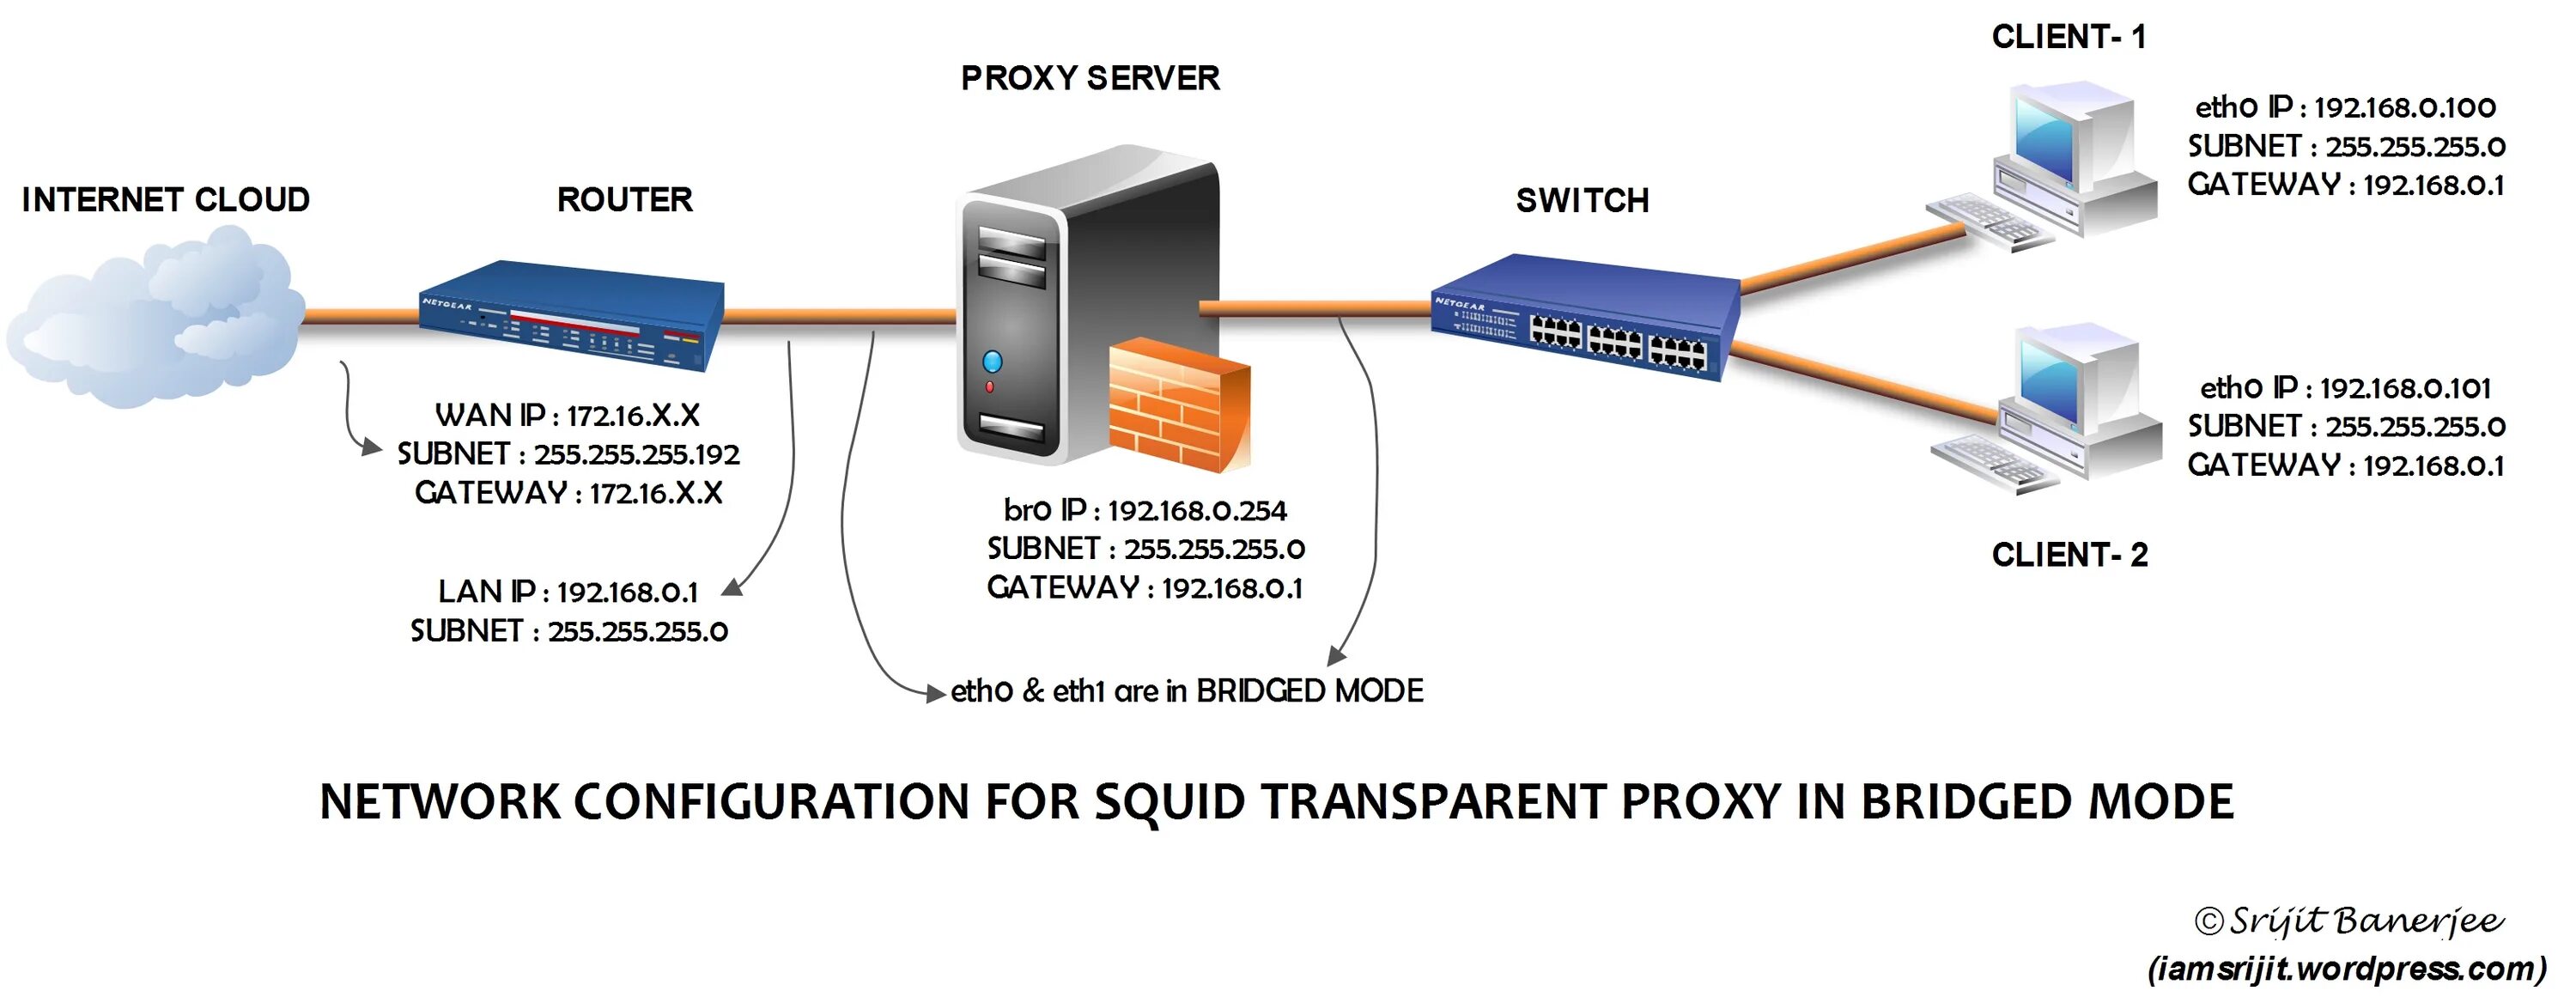 Как работают мобильные прокси. Прокси сервер схема. Прозрачный прокси сервер. Прокси сервер Squid. Режим моста в роутере что это.